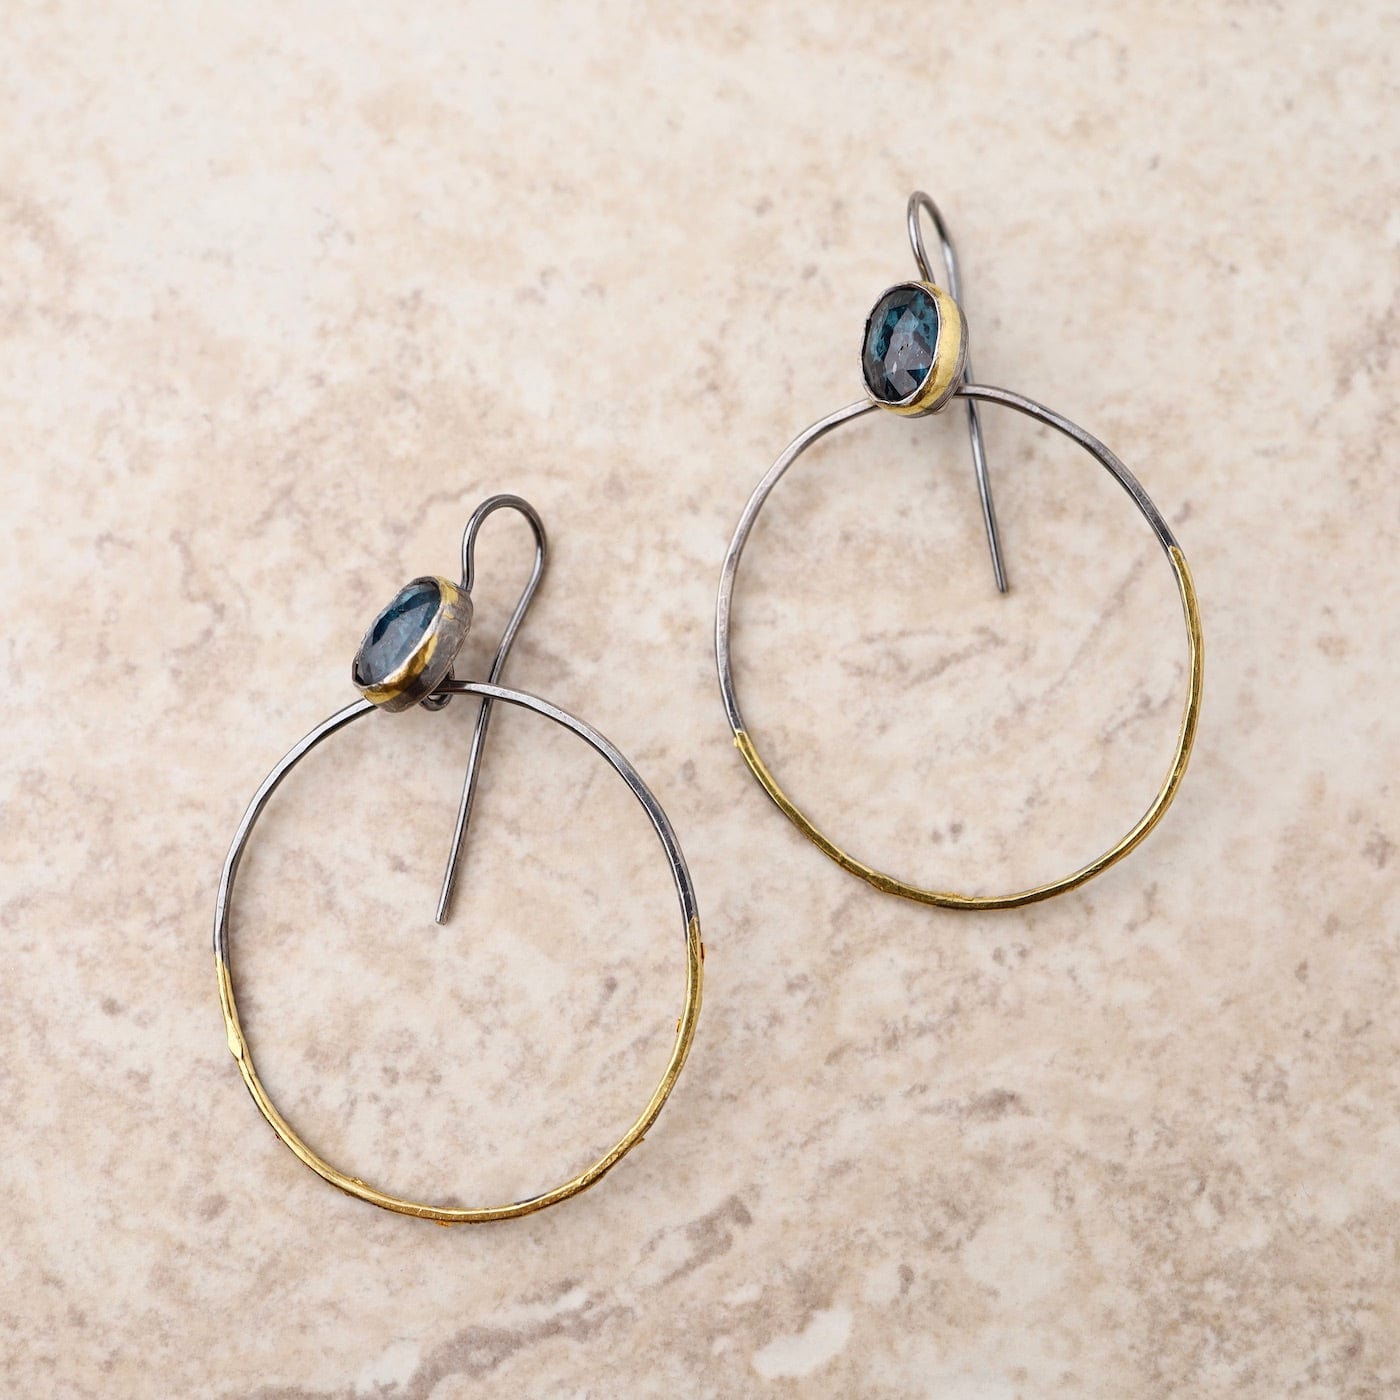 EAR Rim Hoop Earrings with Teal Kyanite